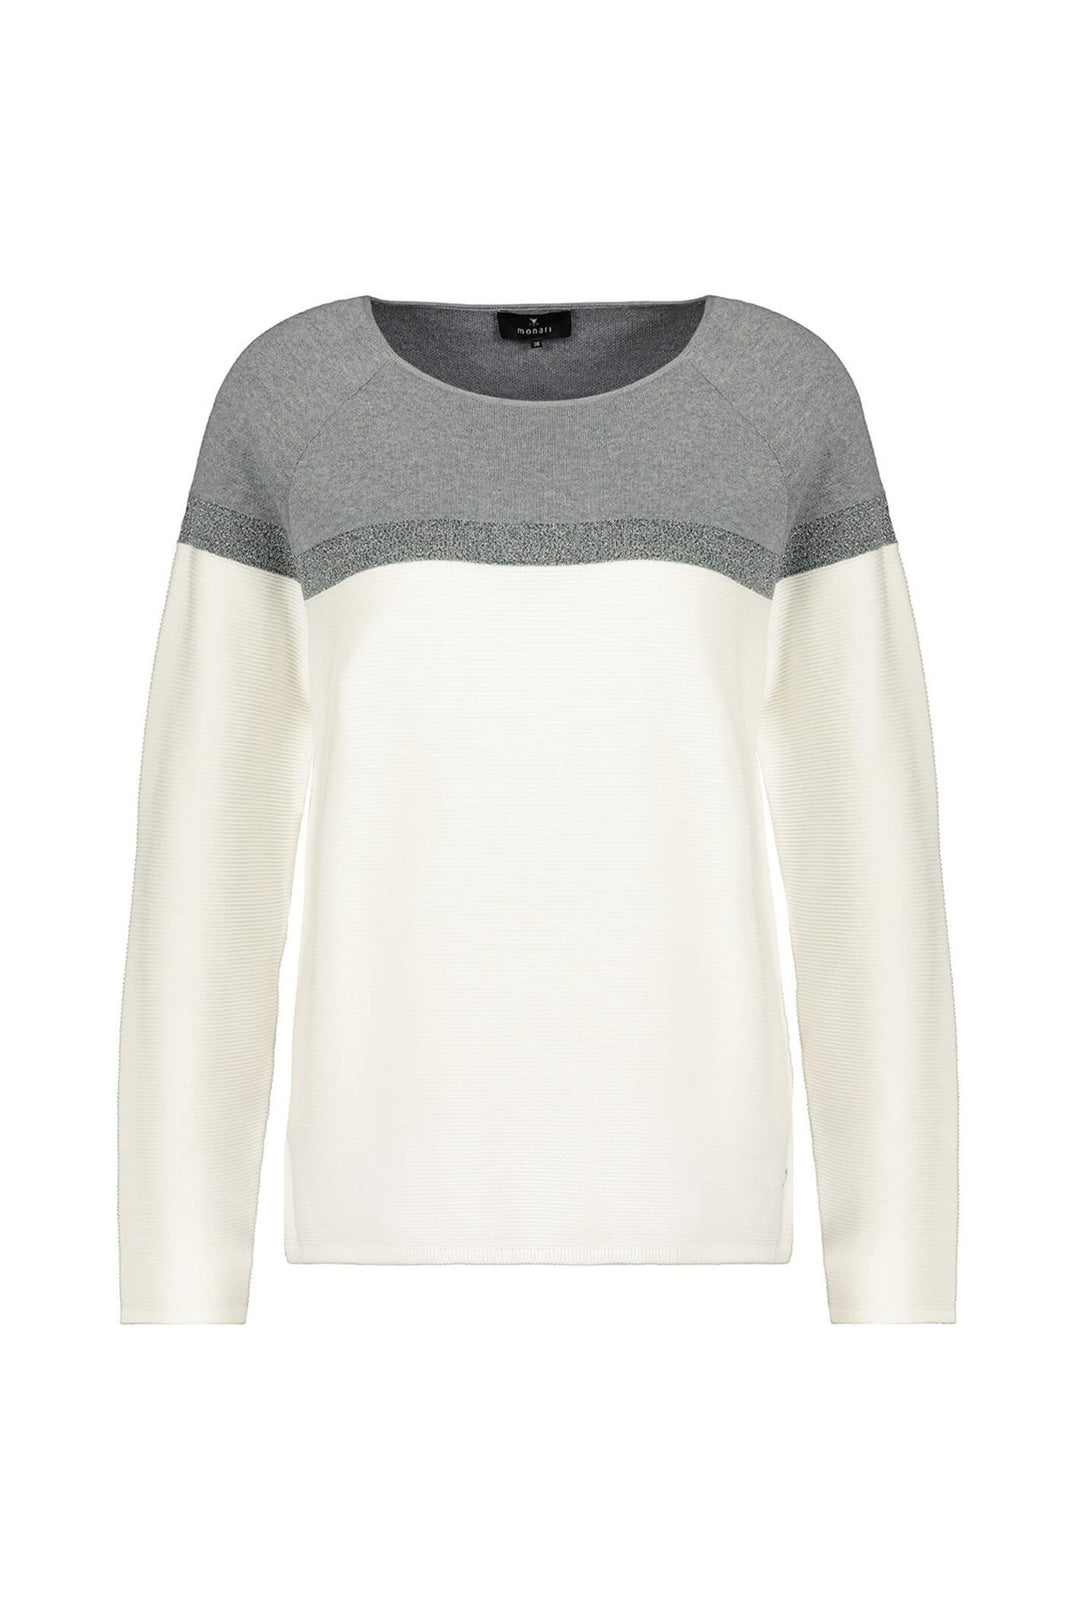 Monari 804821 Off White Colour Block Sweater - Dotique